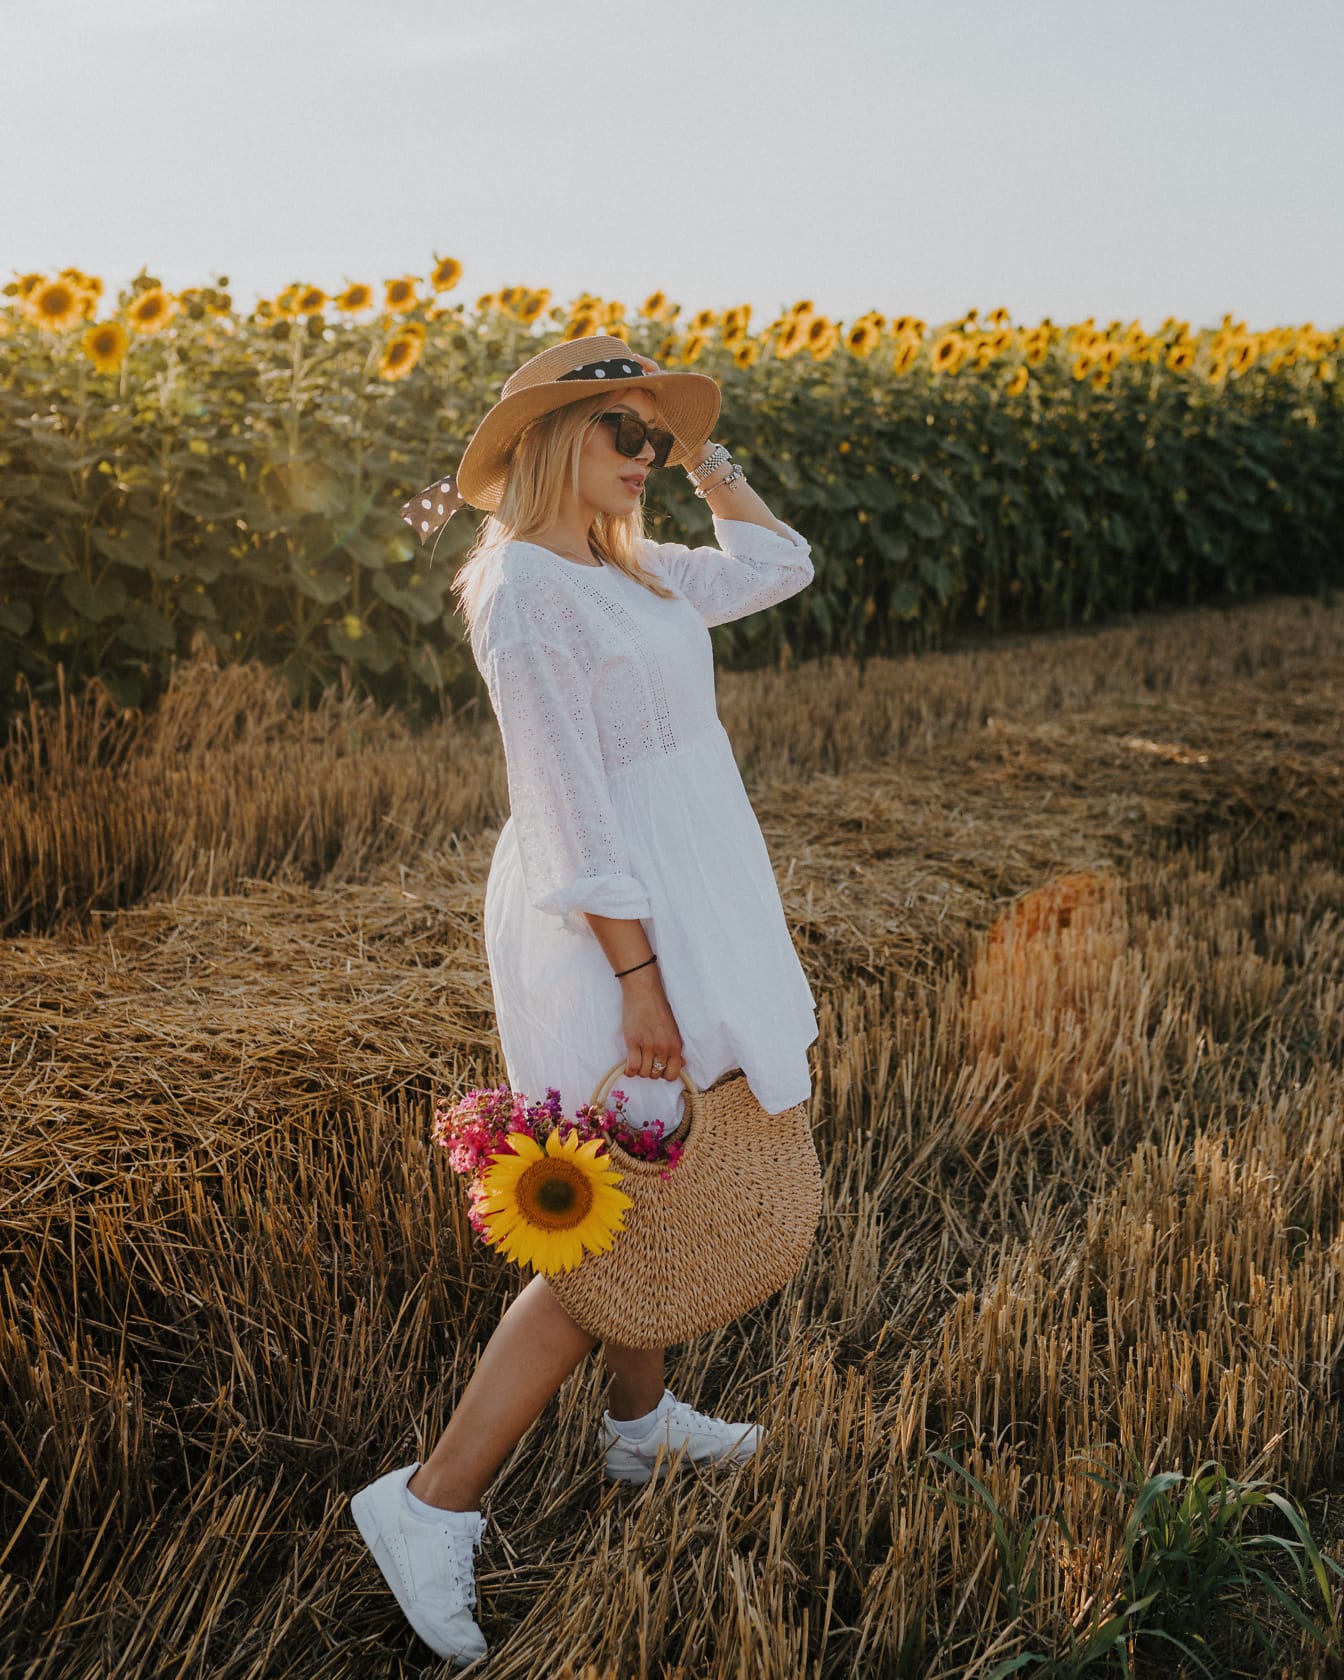 Žena u polju pšenice u bijeloj haljini i šeširu drži torbu i cvijeće